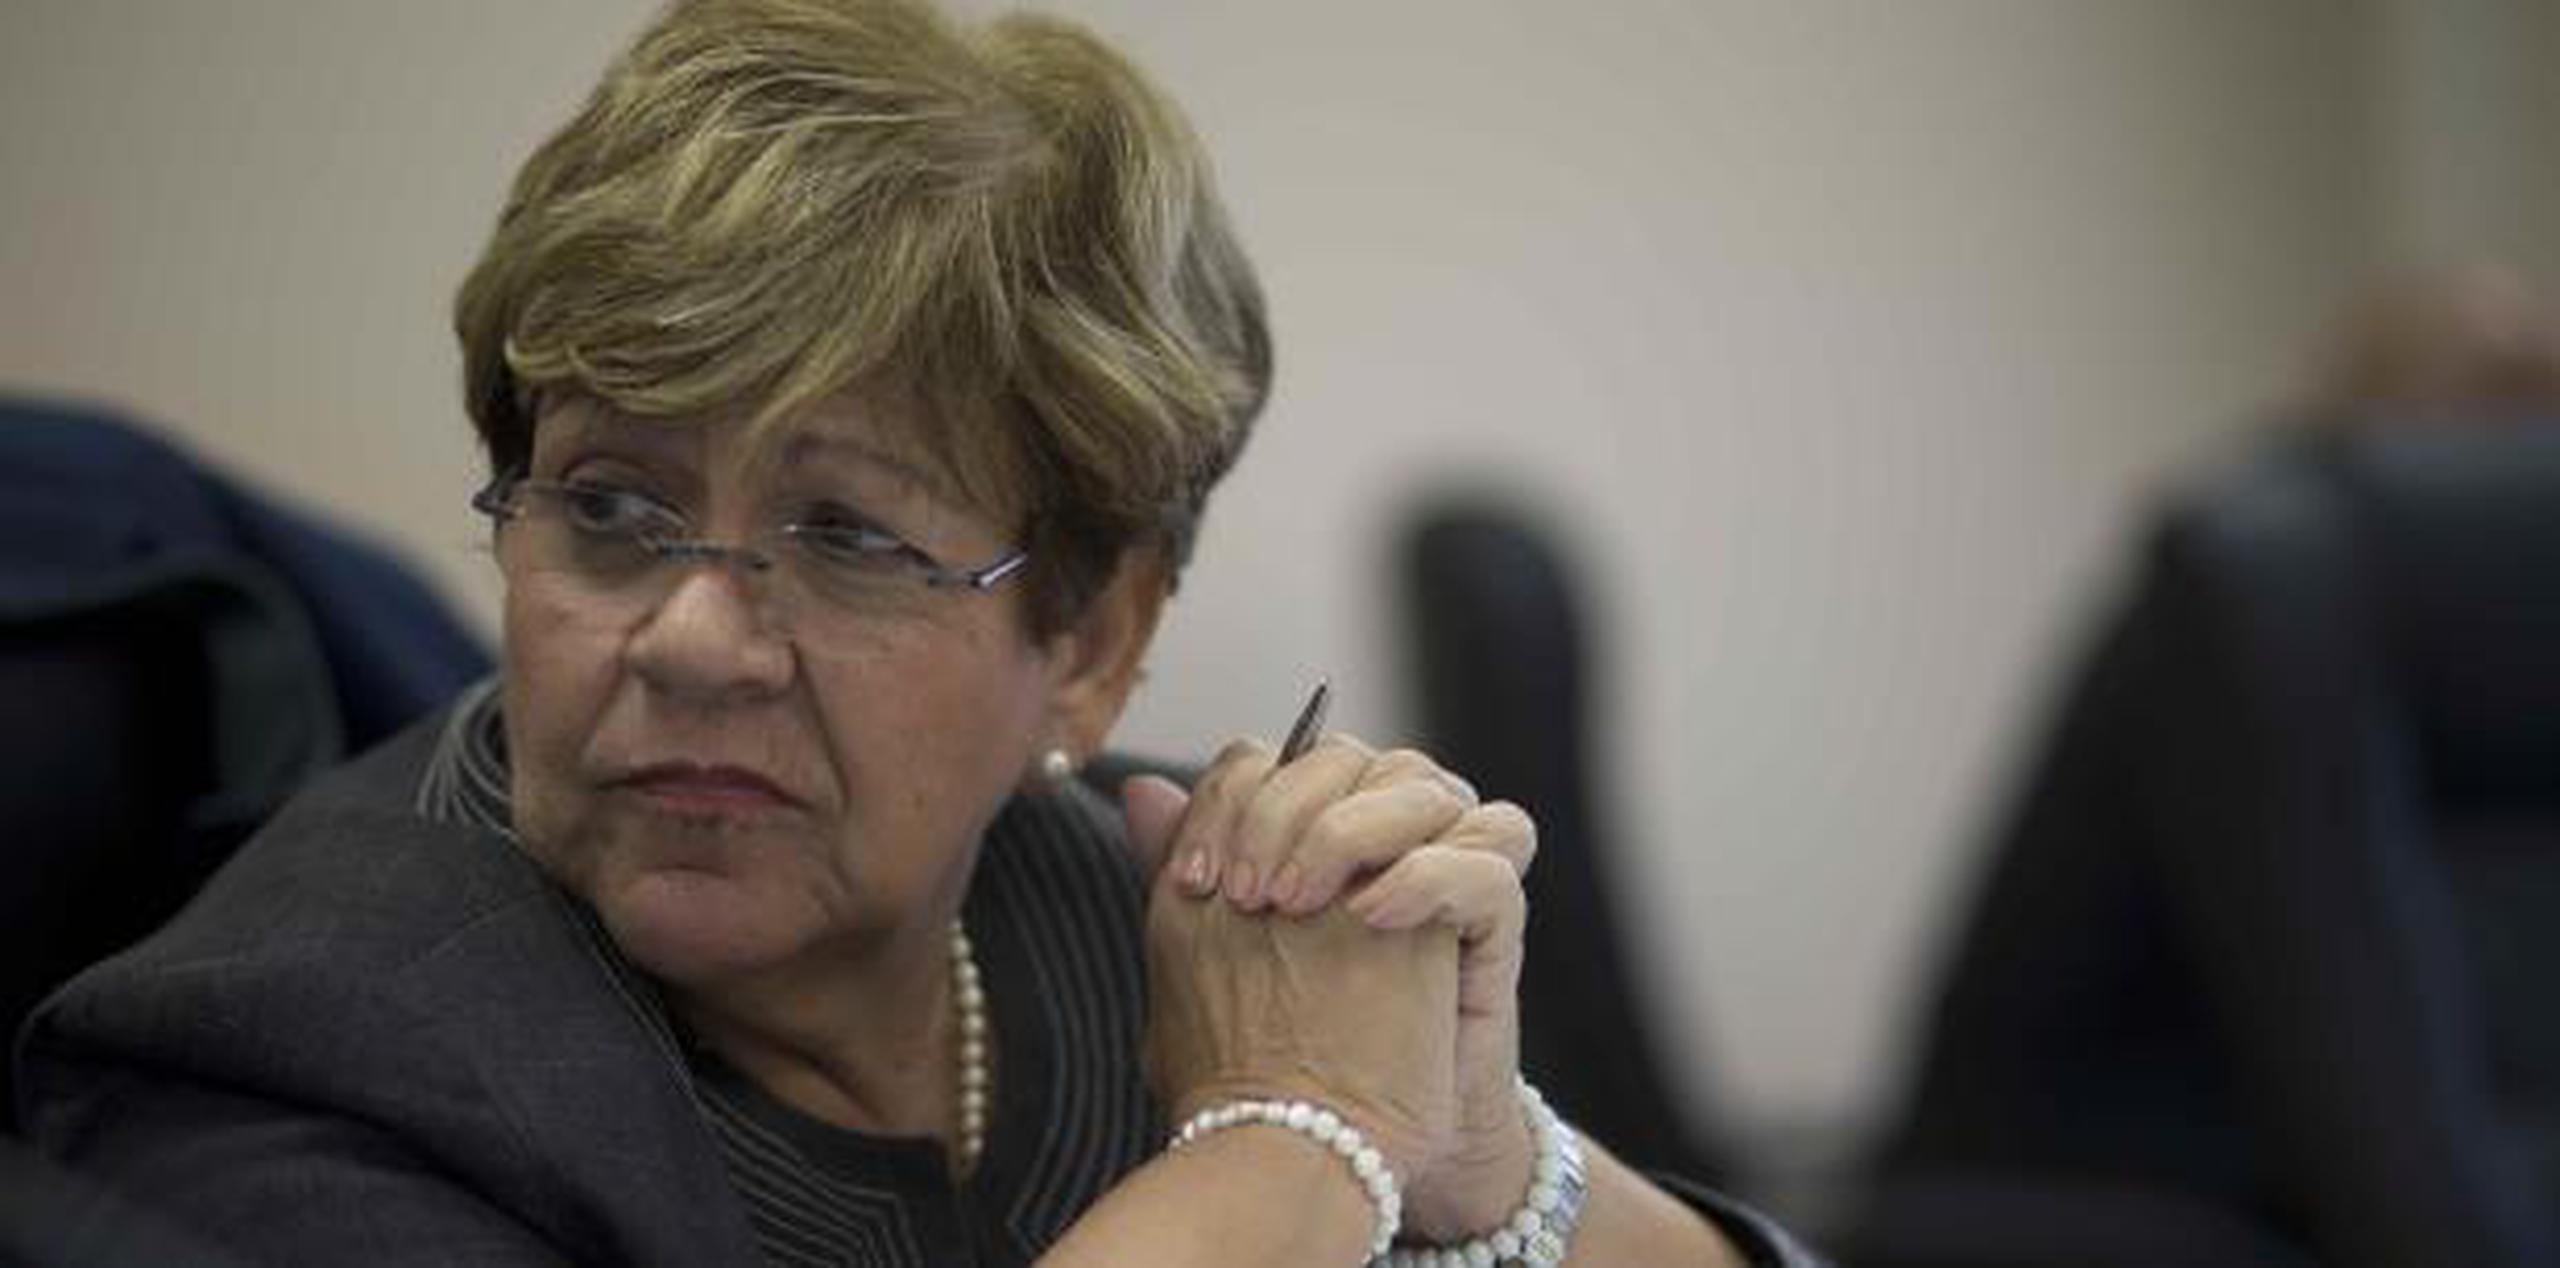 La alcaldesa de Ponce, María Eloisa Meléndez Altieri, aseguró que está “muy triste”. (Archivo)